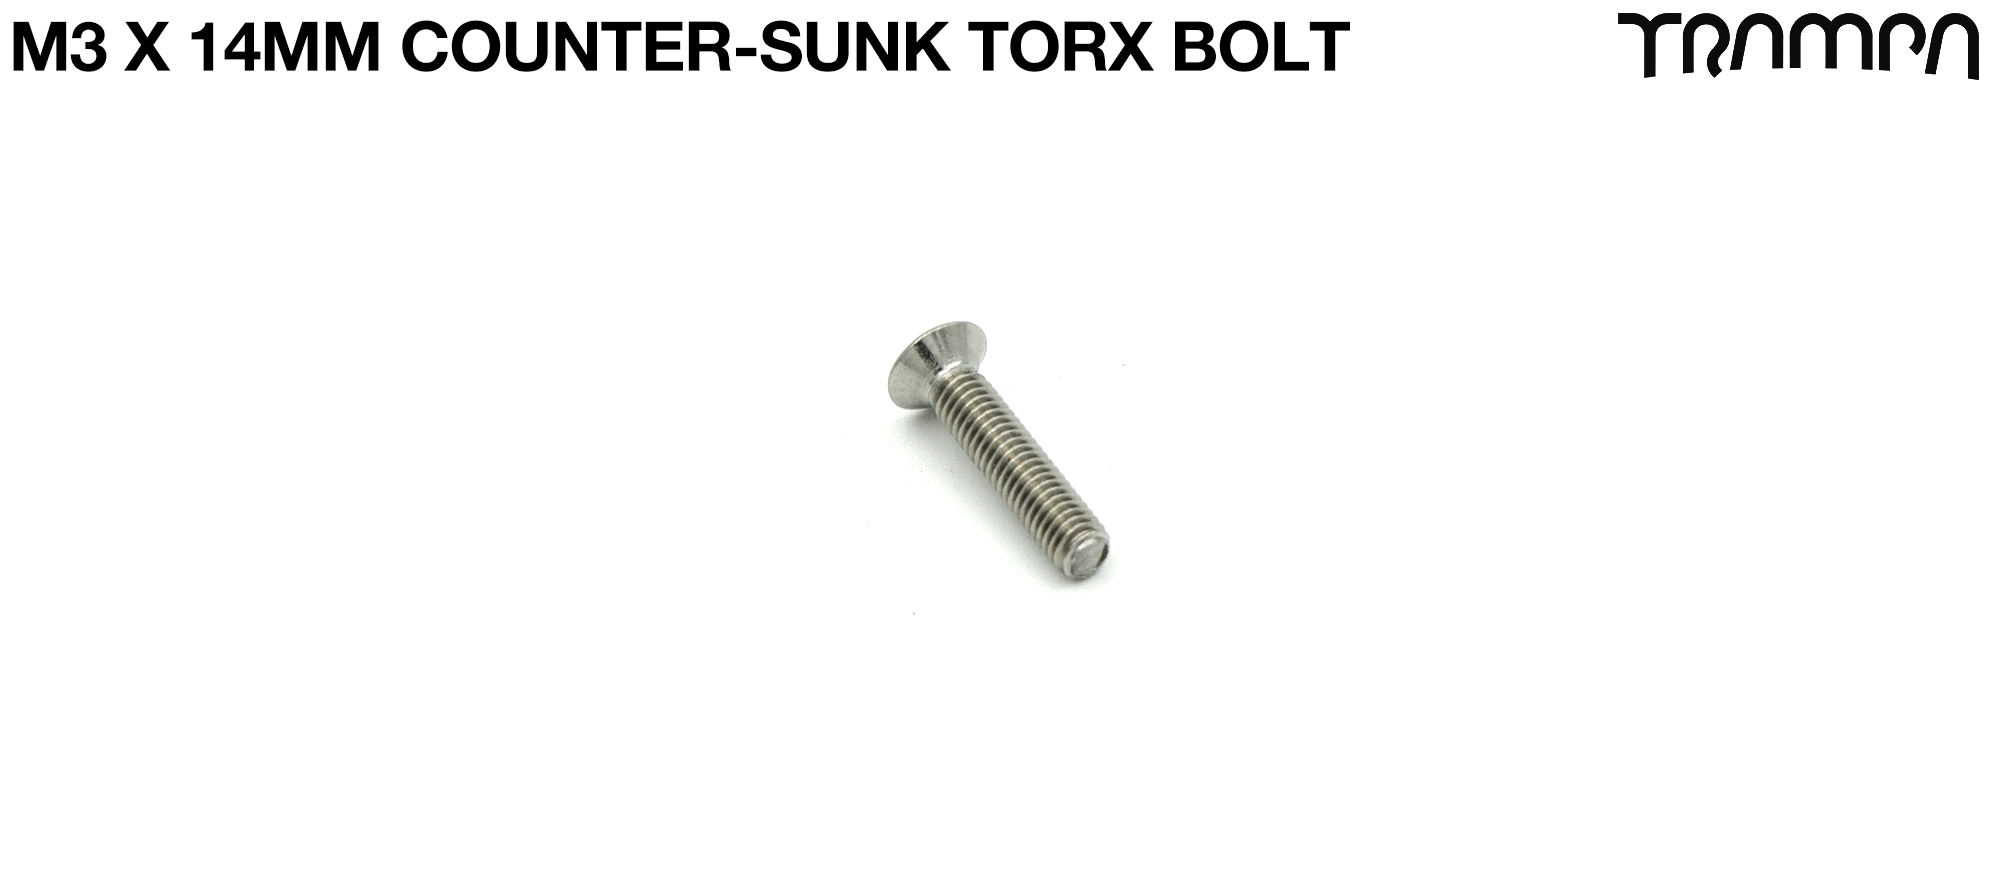 M3 x 14mm T10 Torx Countersunk Bolt STR-500